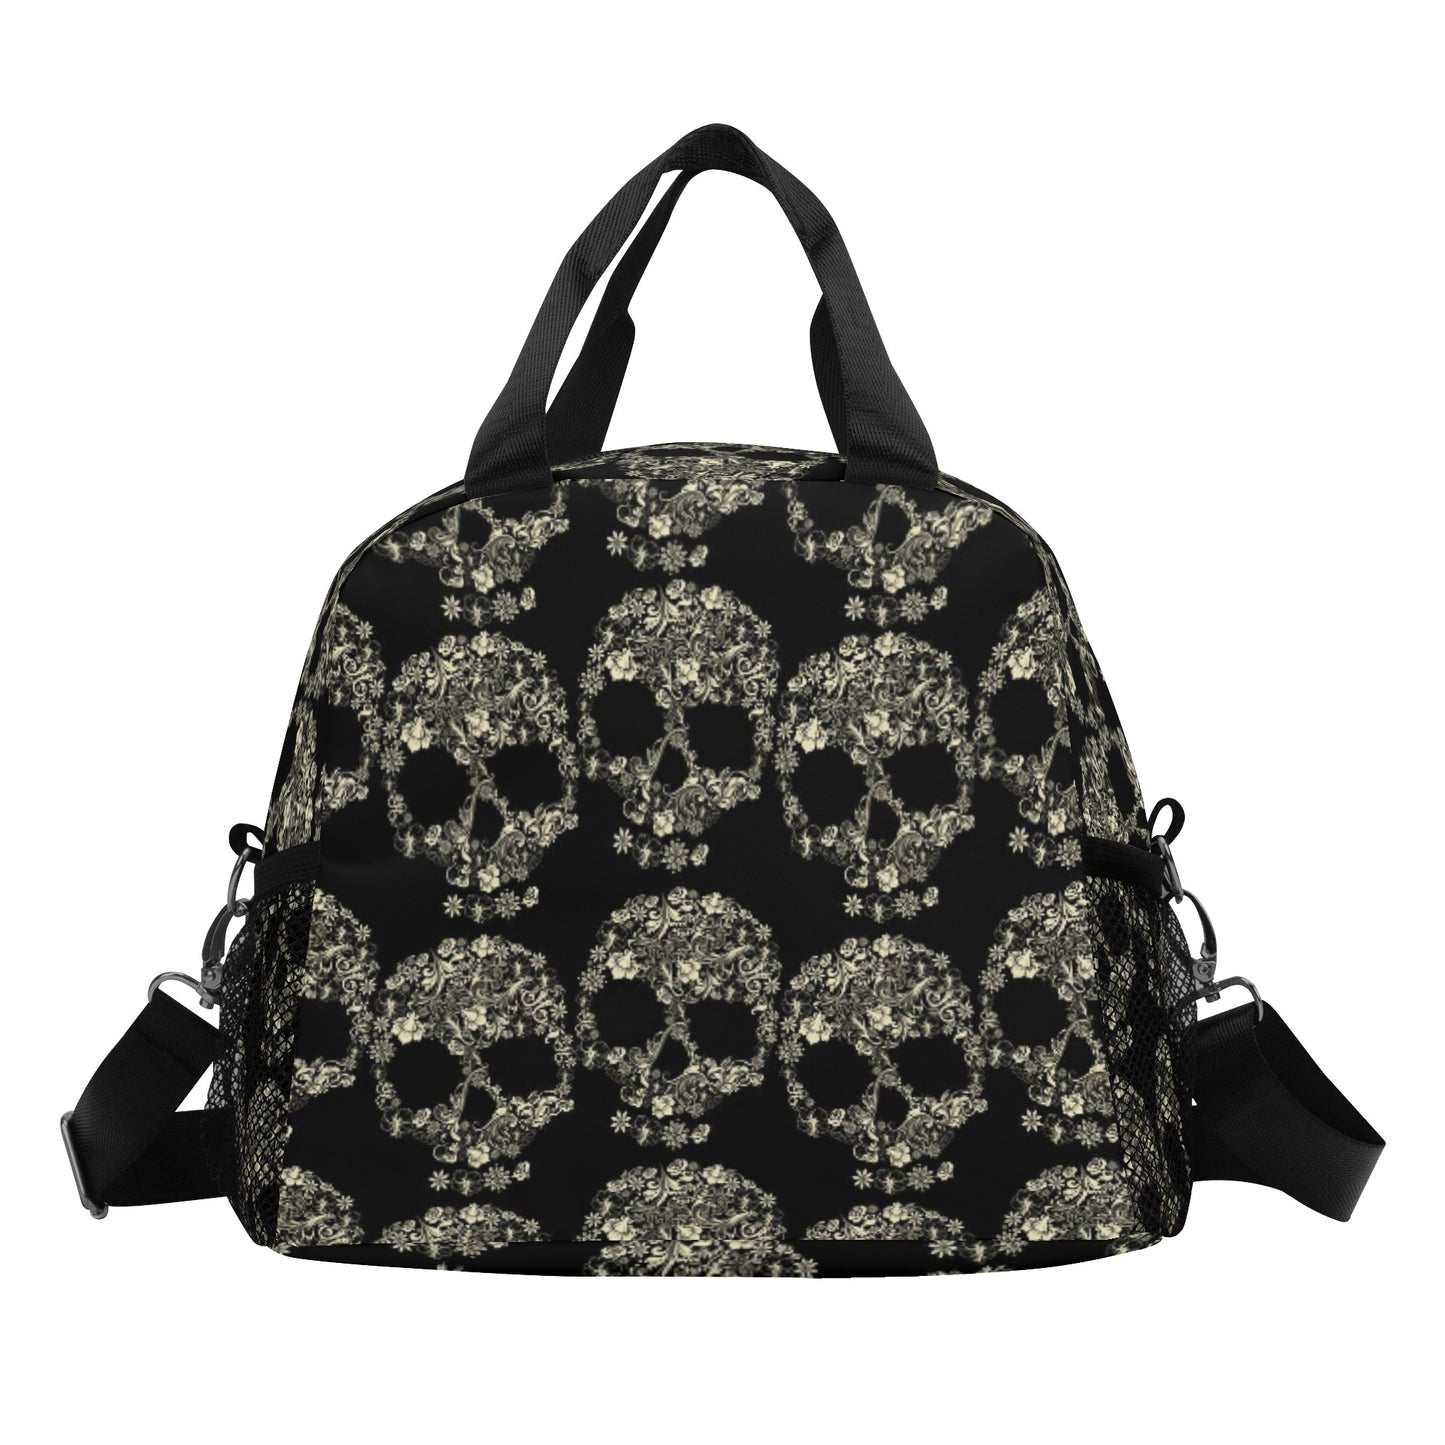 All Skull pattern sugar skull Over Printing Lunch Bag